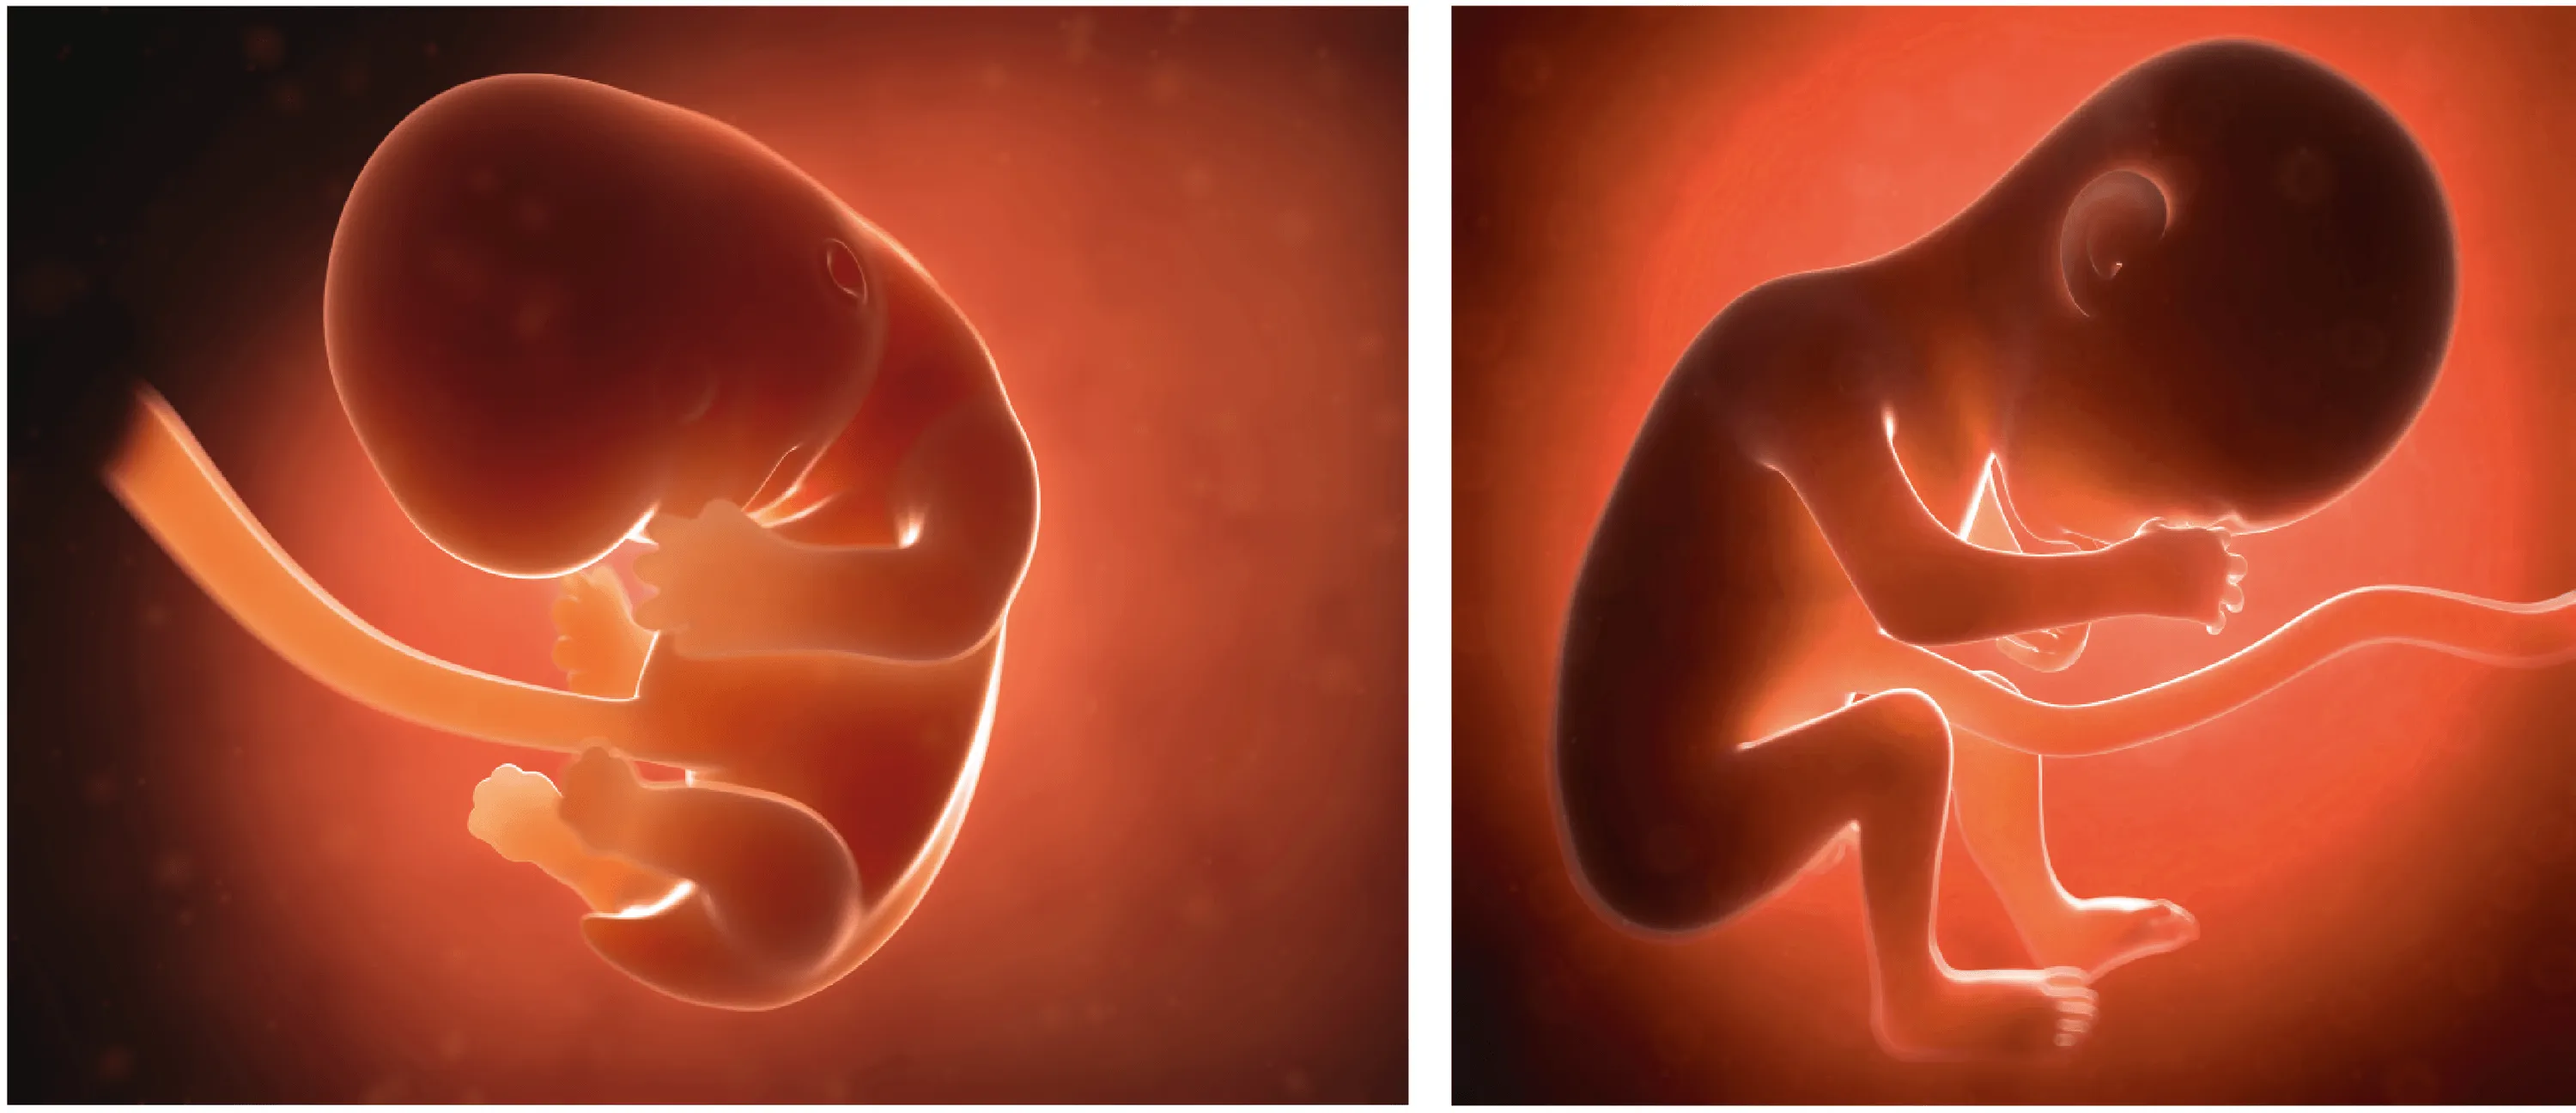 Le futur bébé au bout de 2 mois (à gauche) et de 6 mois de grossesse (à droite).